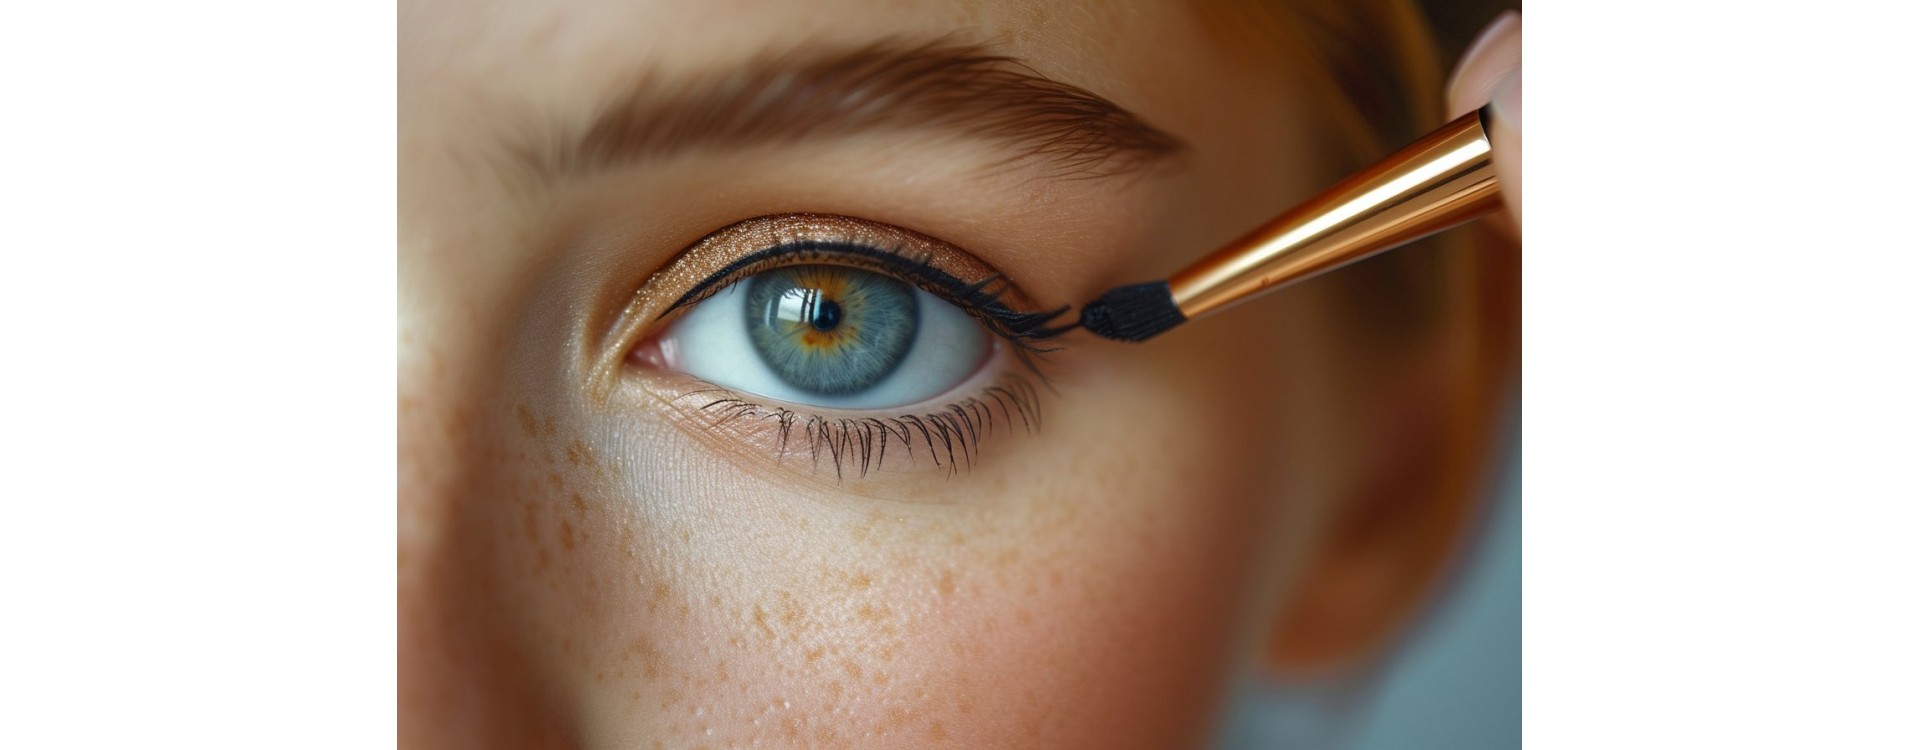 Eye-liner : les erreurs courantes et comment les éviter